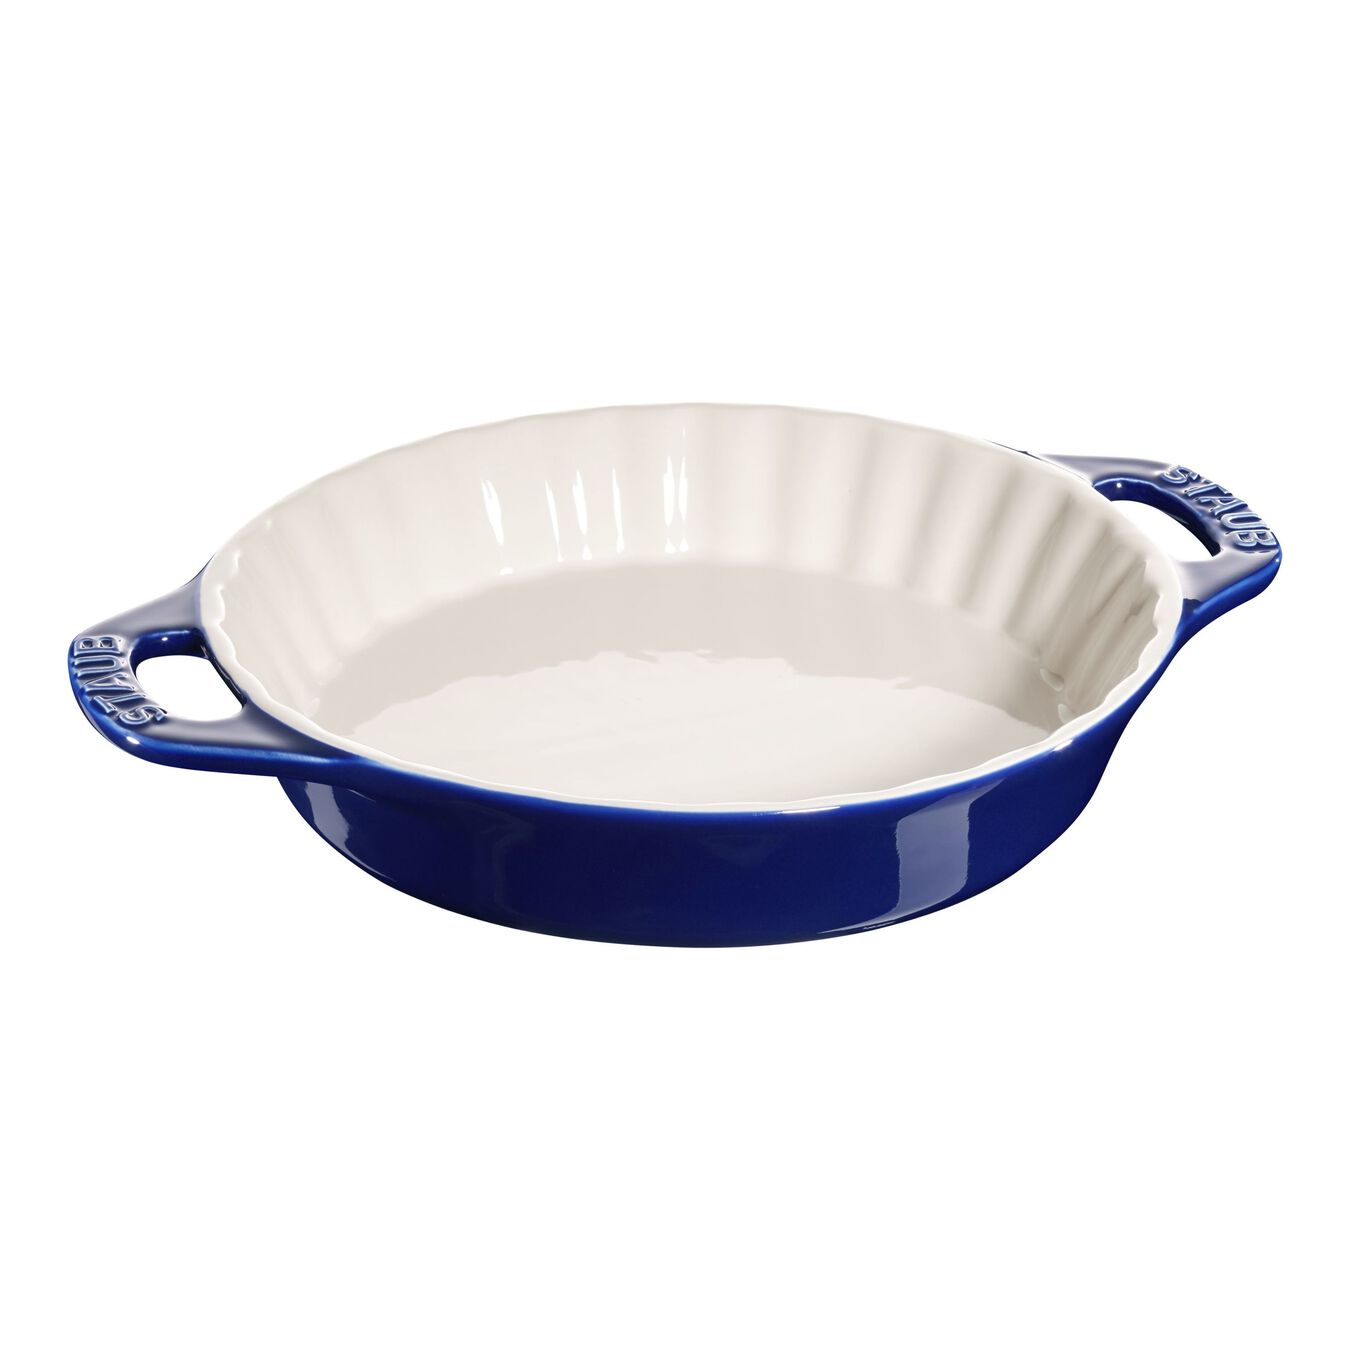 24 cm Ceramic Pie dish dark-blue,,large 1